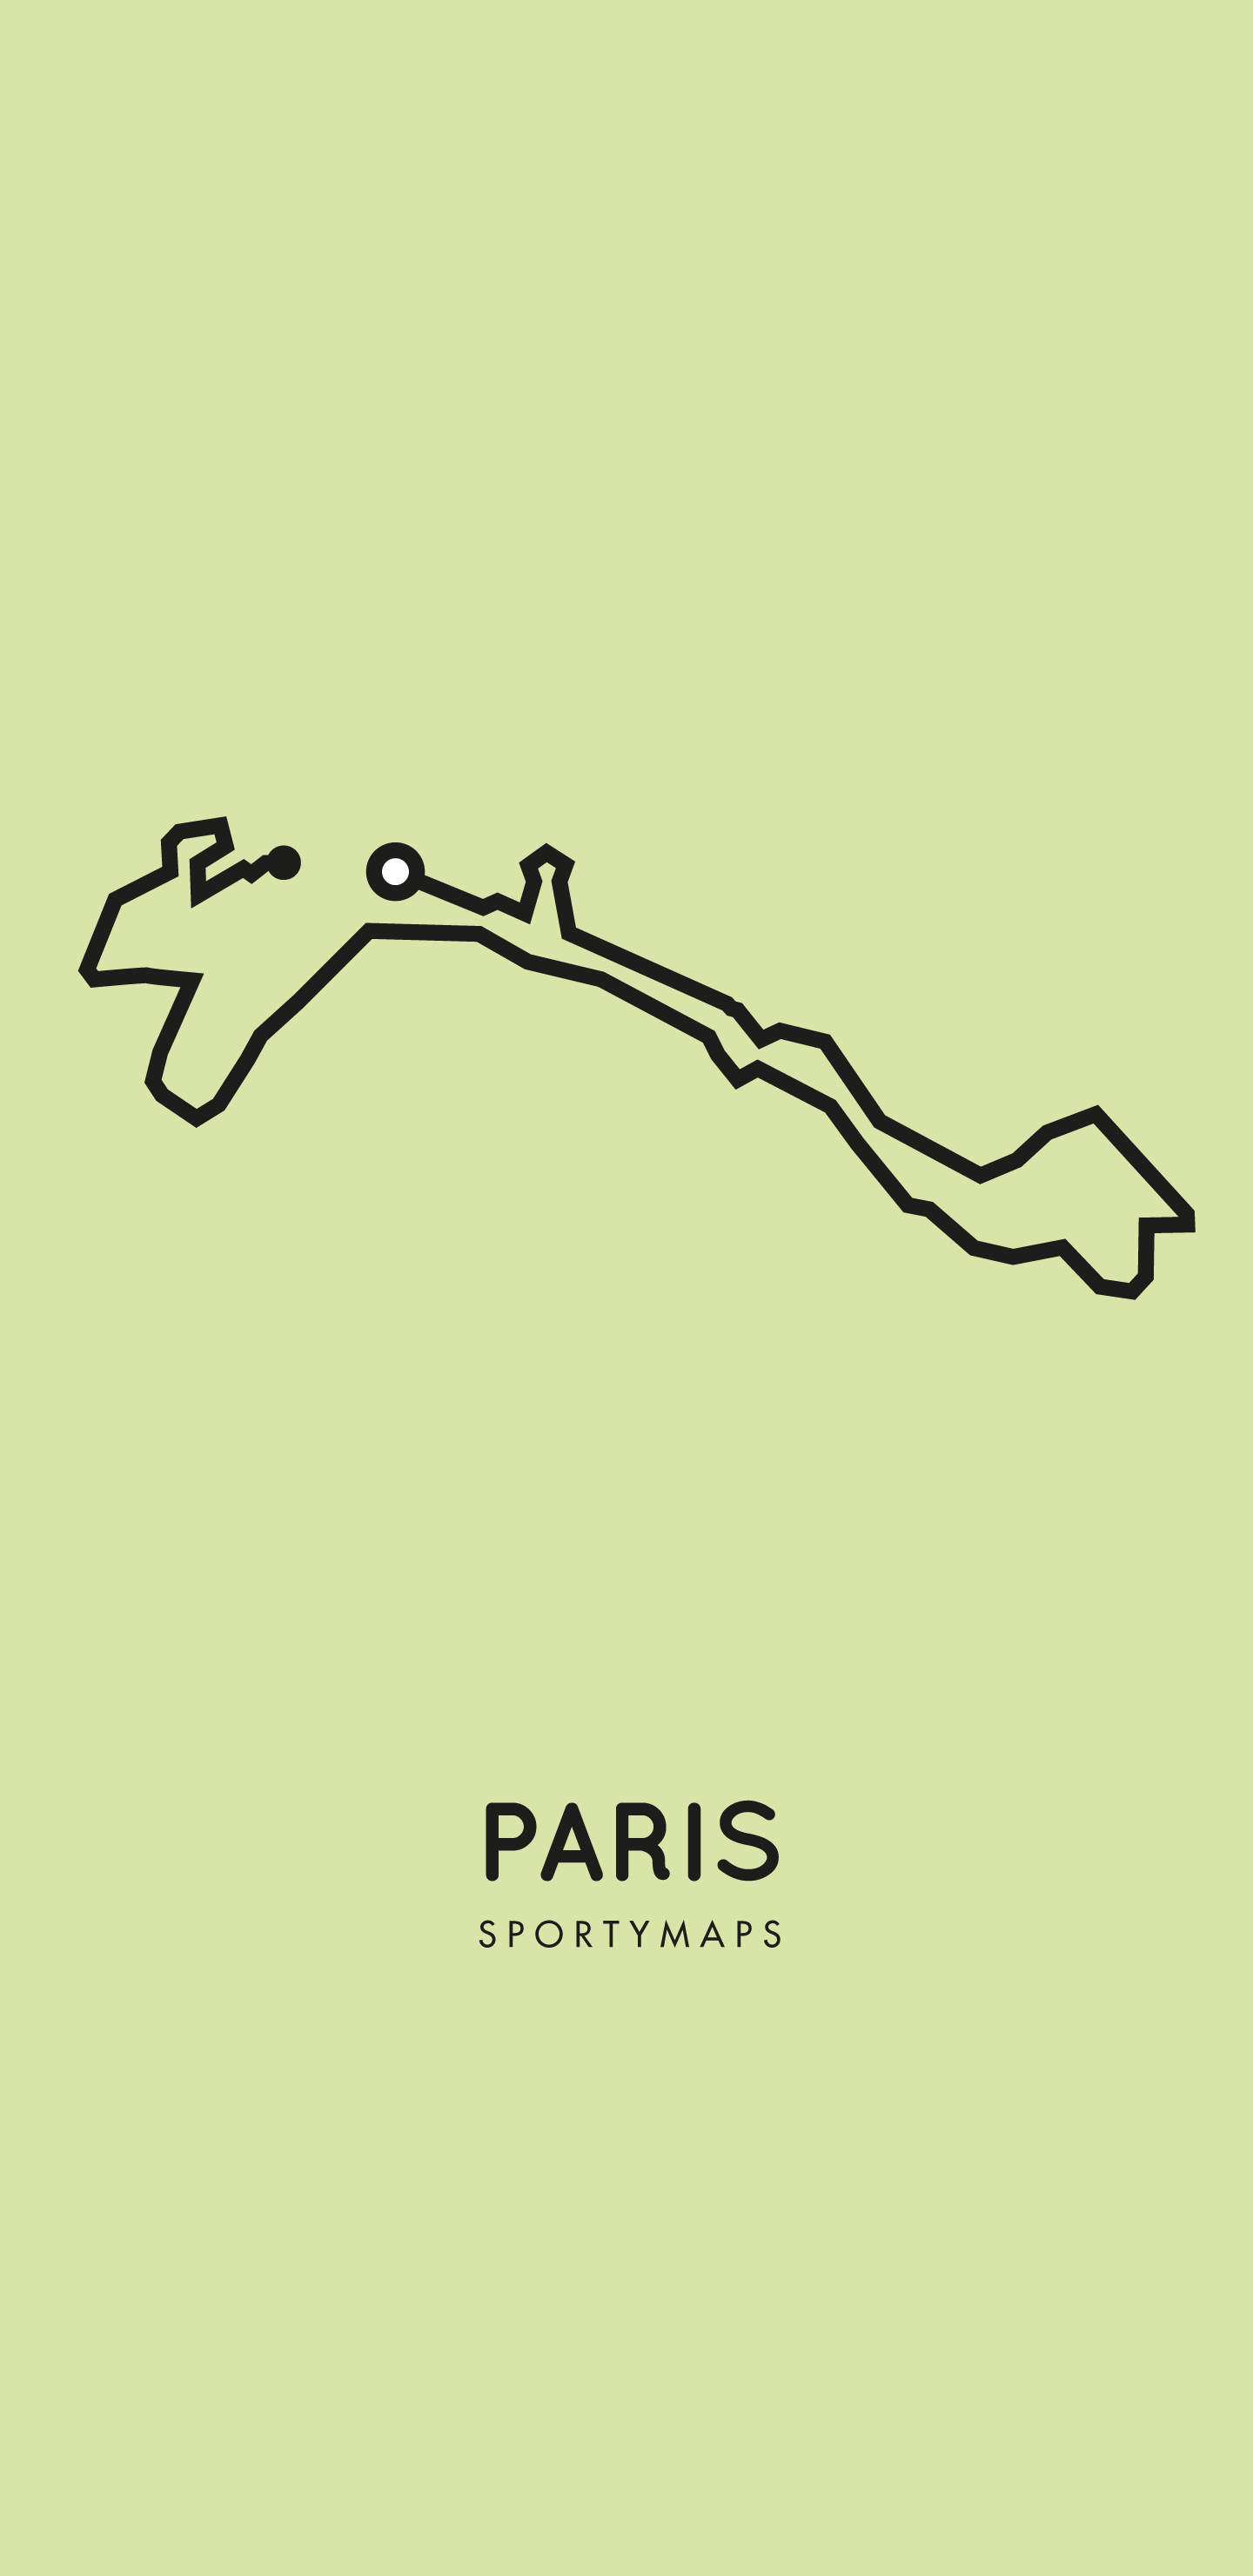 Sportymaps-Paris-marathon-green